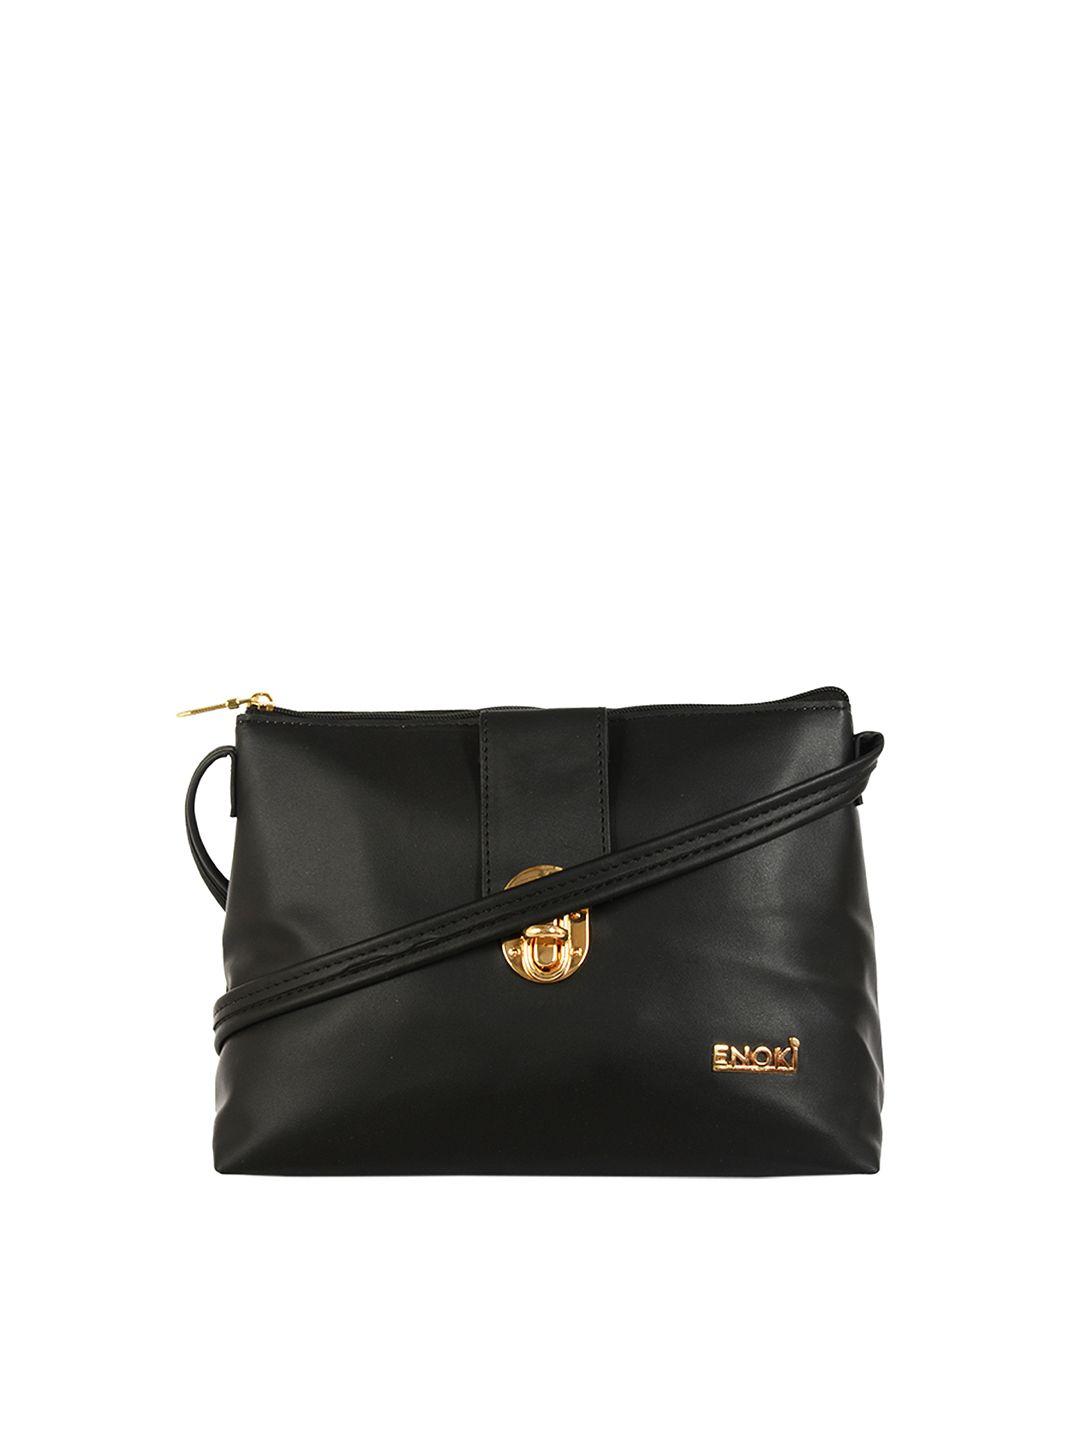 enoki black structured sling bag with applique